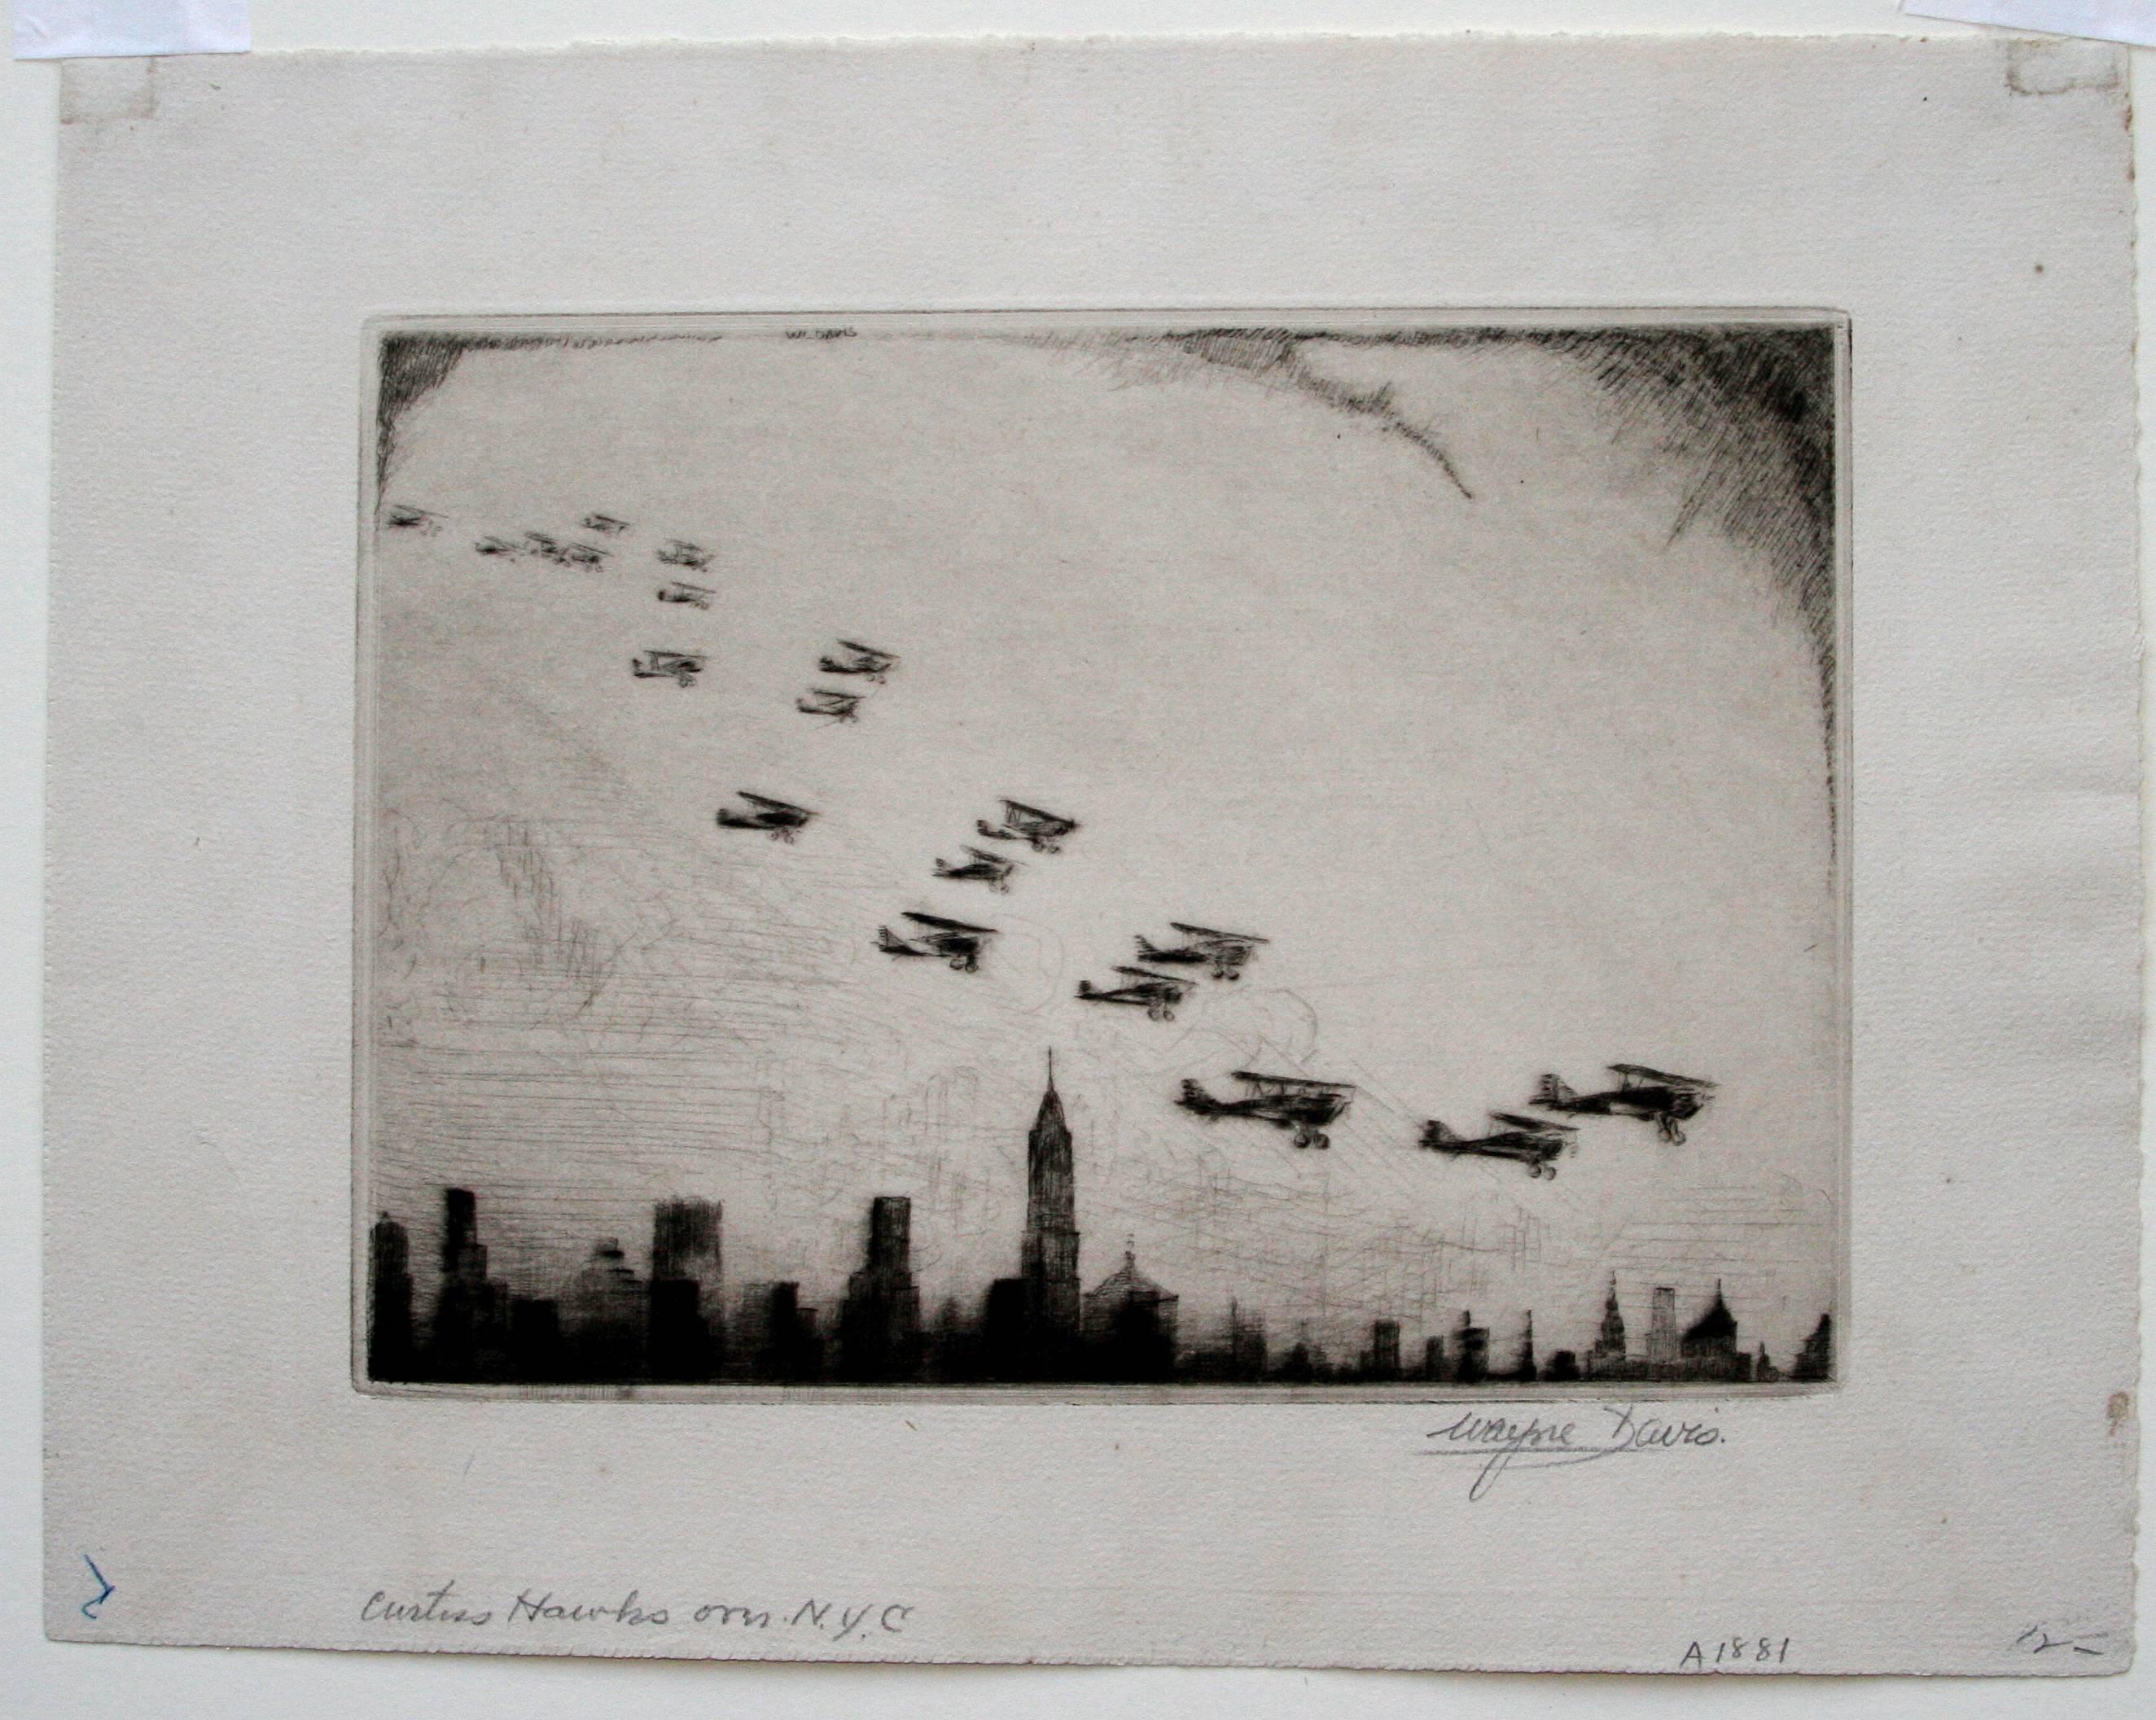 Curtiss Hawkes over N.Y.C. - Print by Wayne Davis